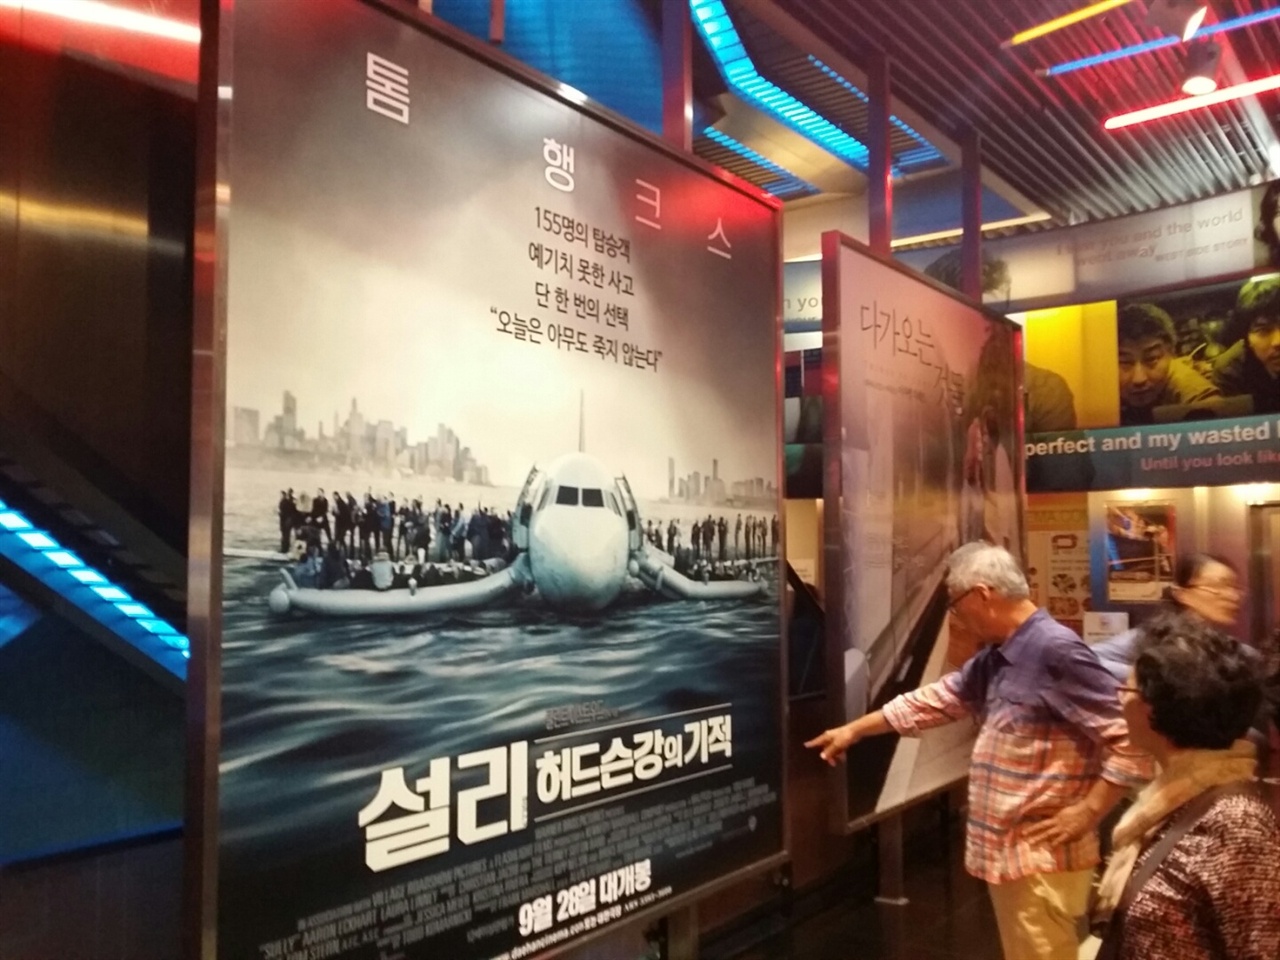  충무로 대한극장에 설치된 영화 설리의 대형 포스터.